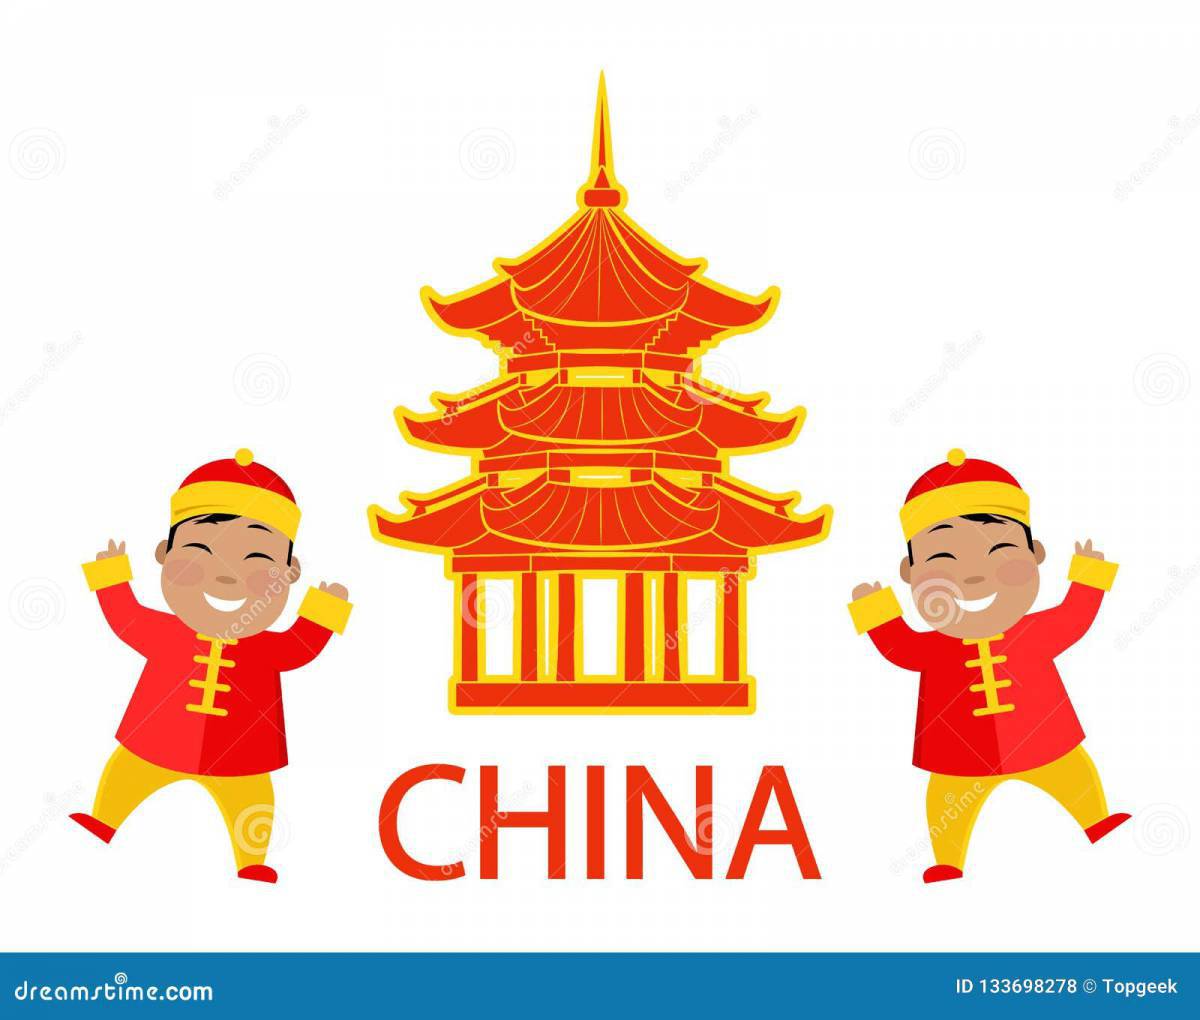 Китай для детей #16